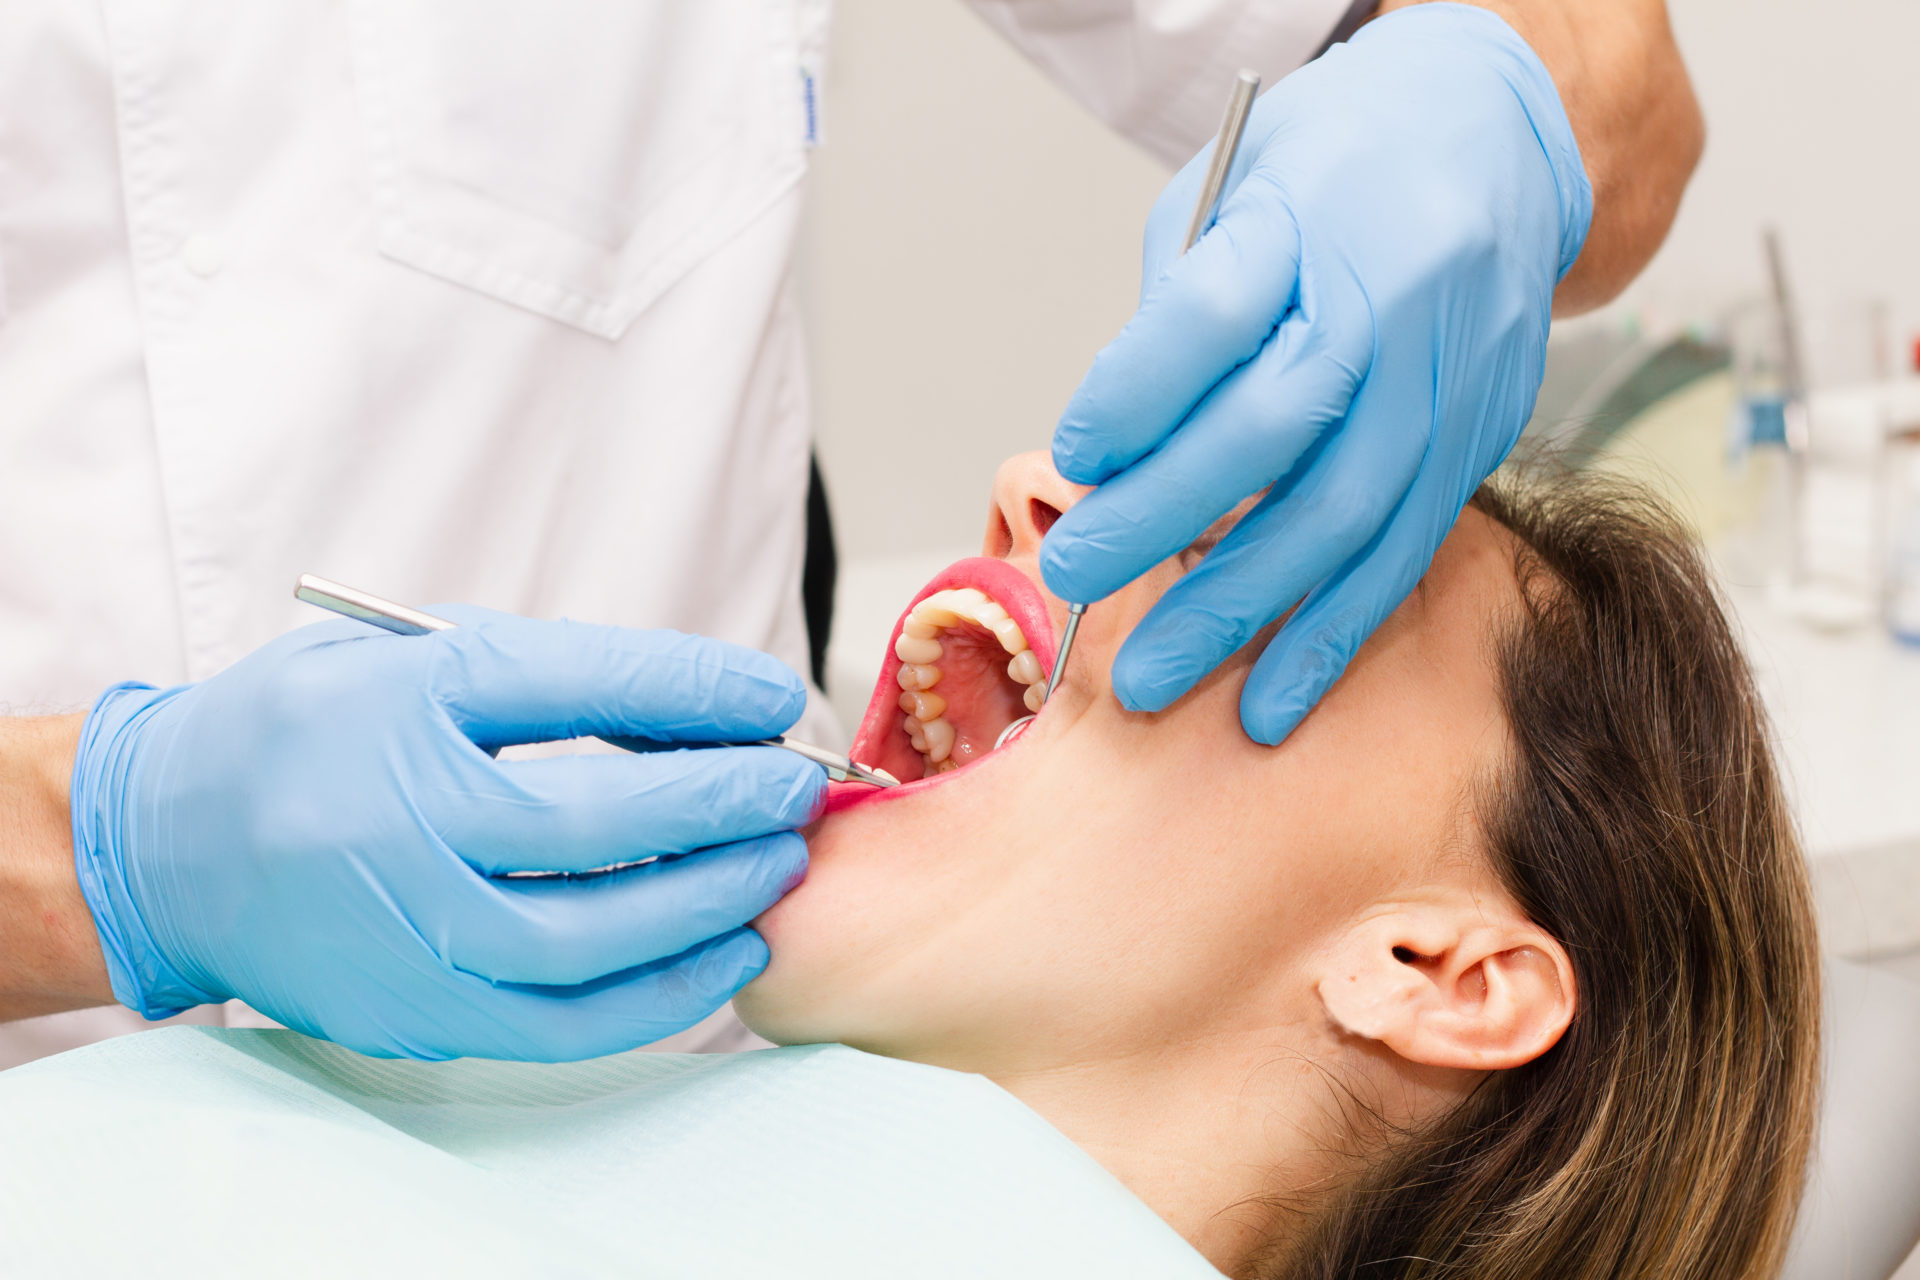 歯の治療を受ける女性